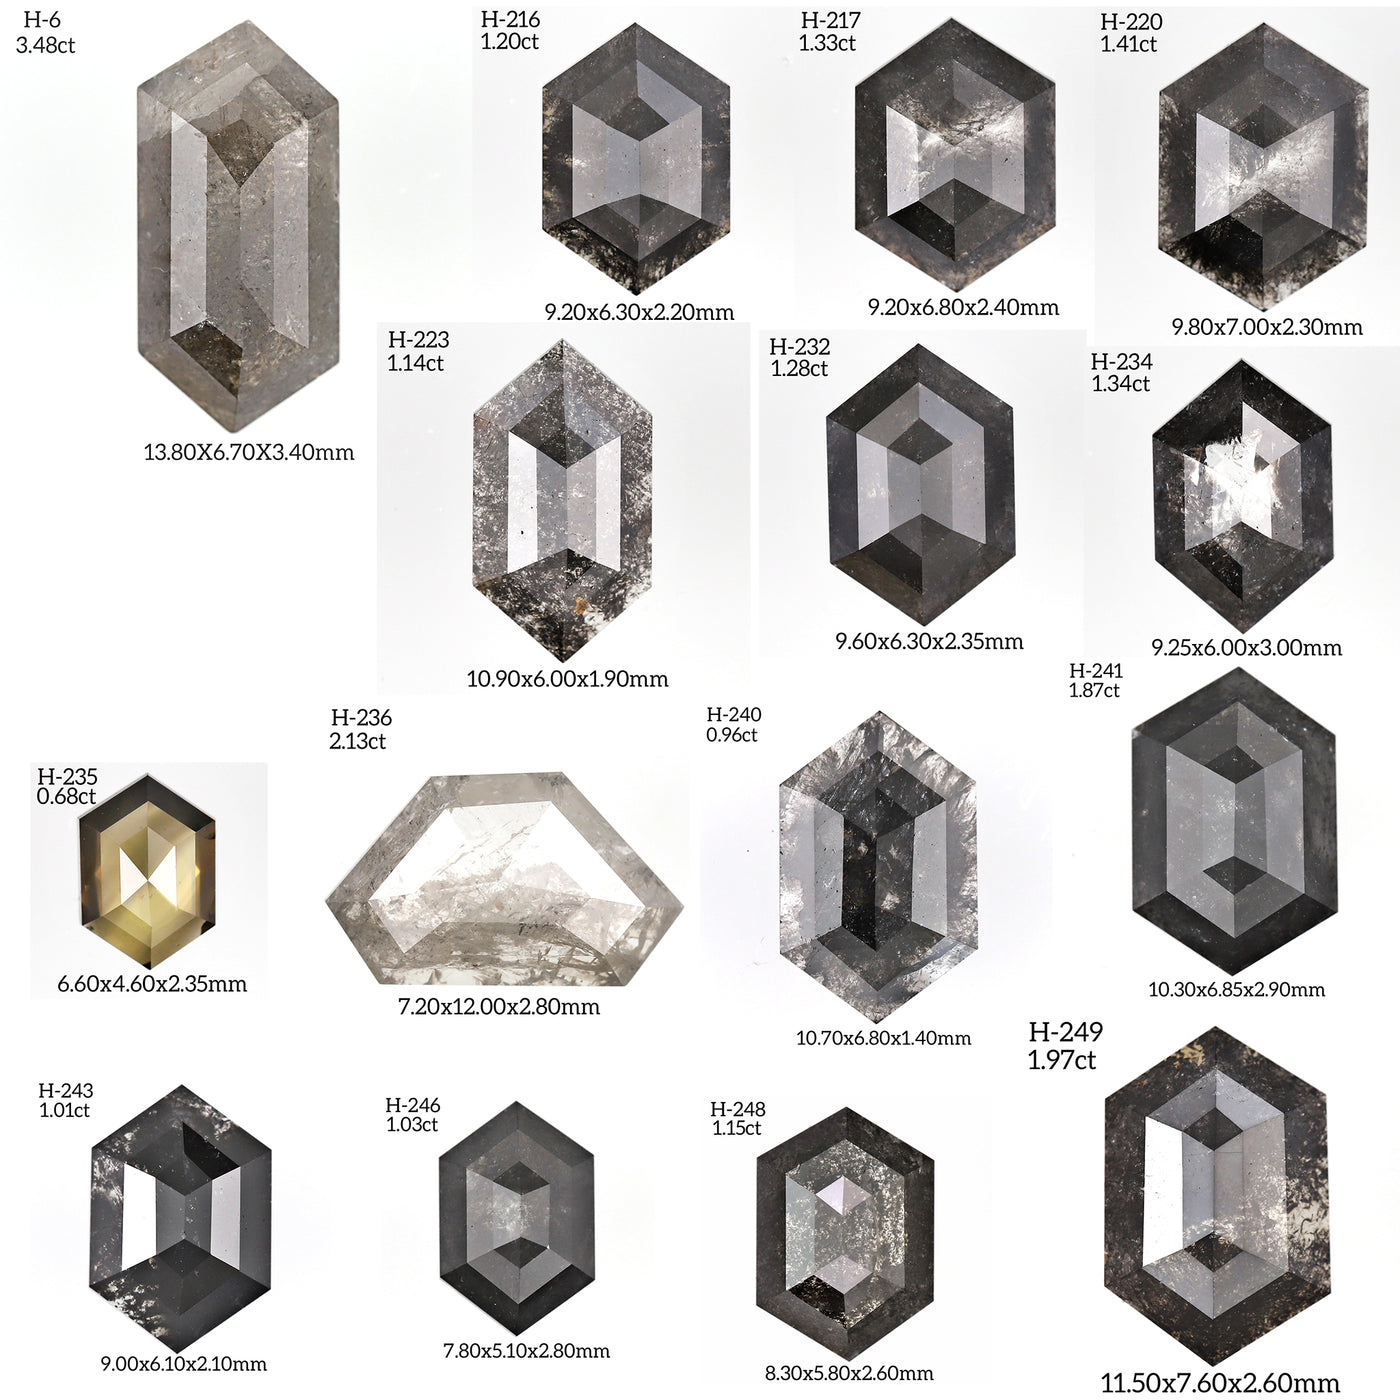 H145 - Salt and pepper hexagon diamond